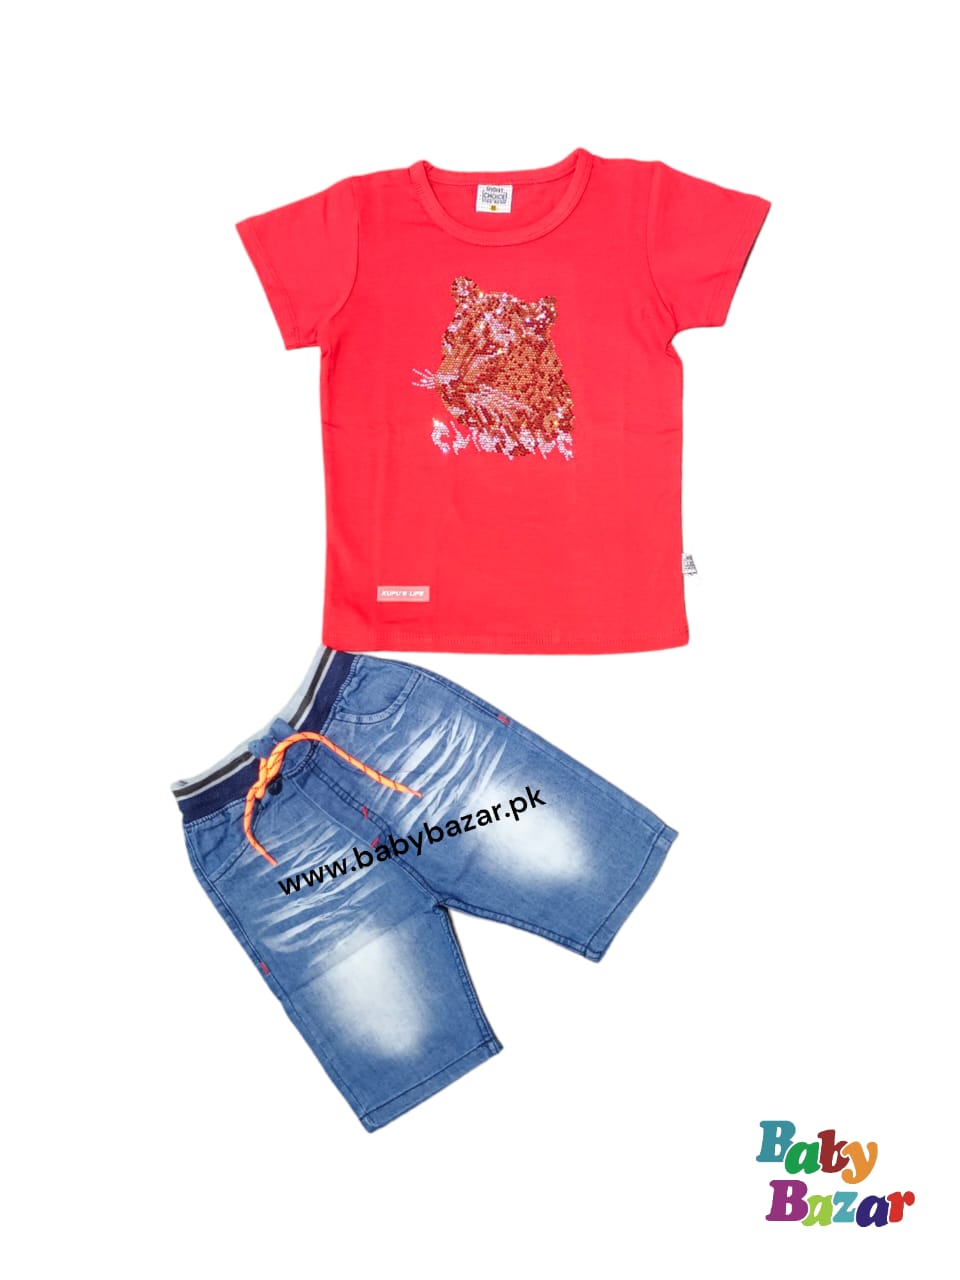 Summer Shirt & Short In Blended Stuff For Boys